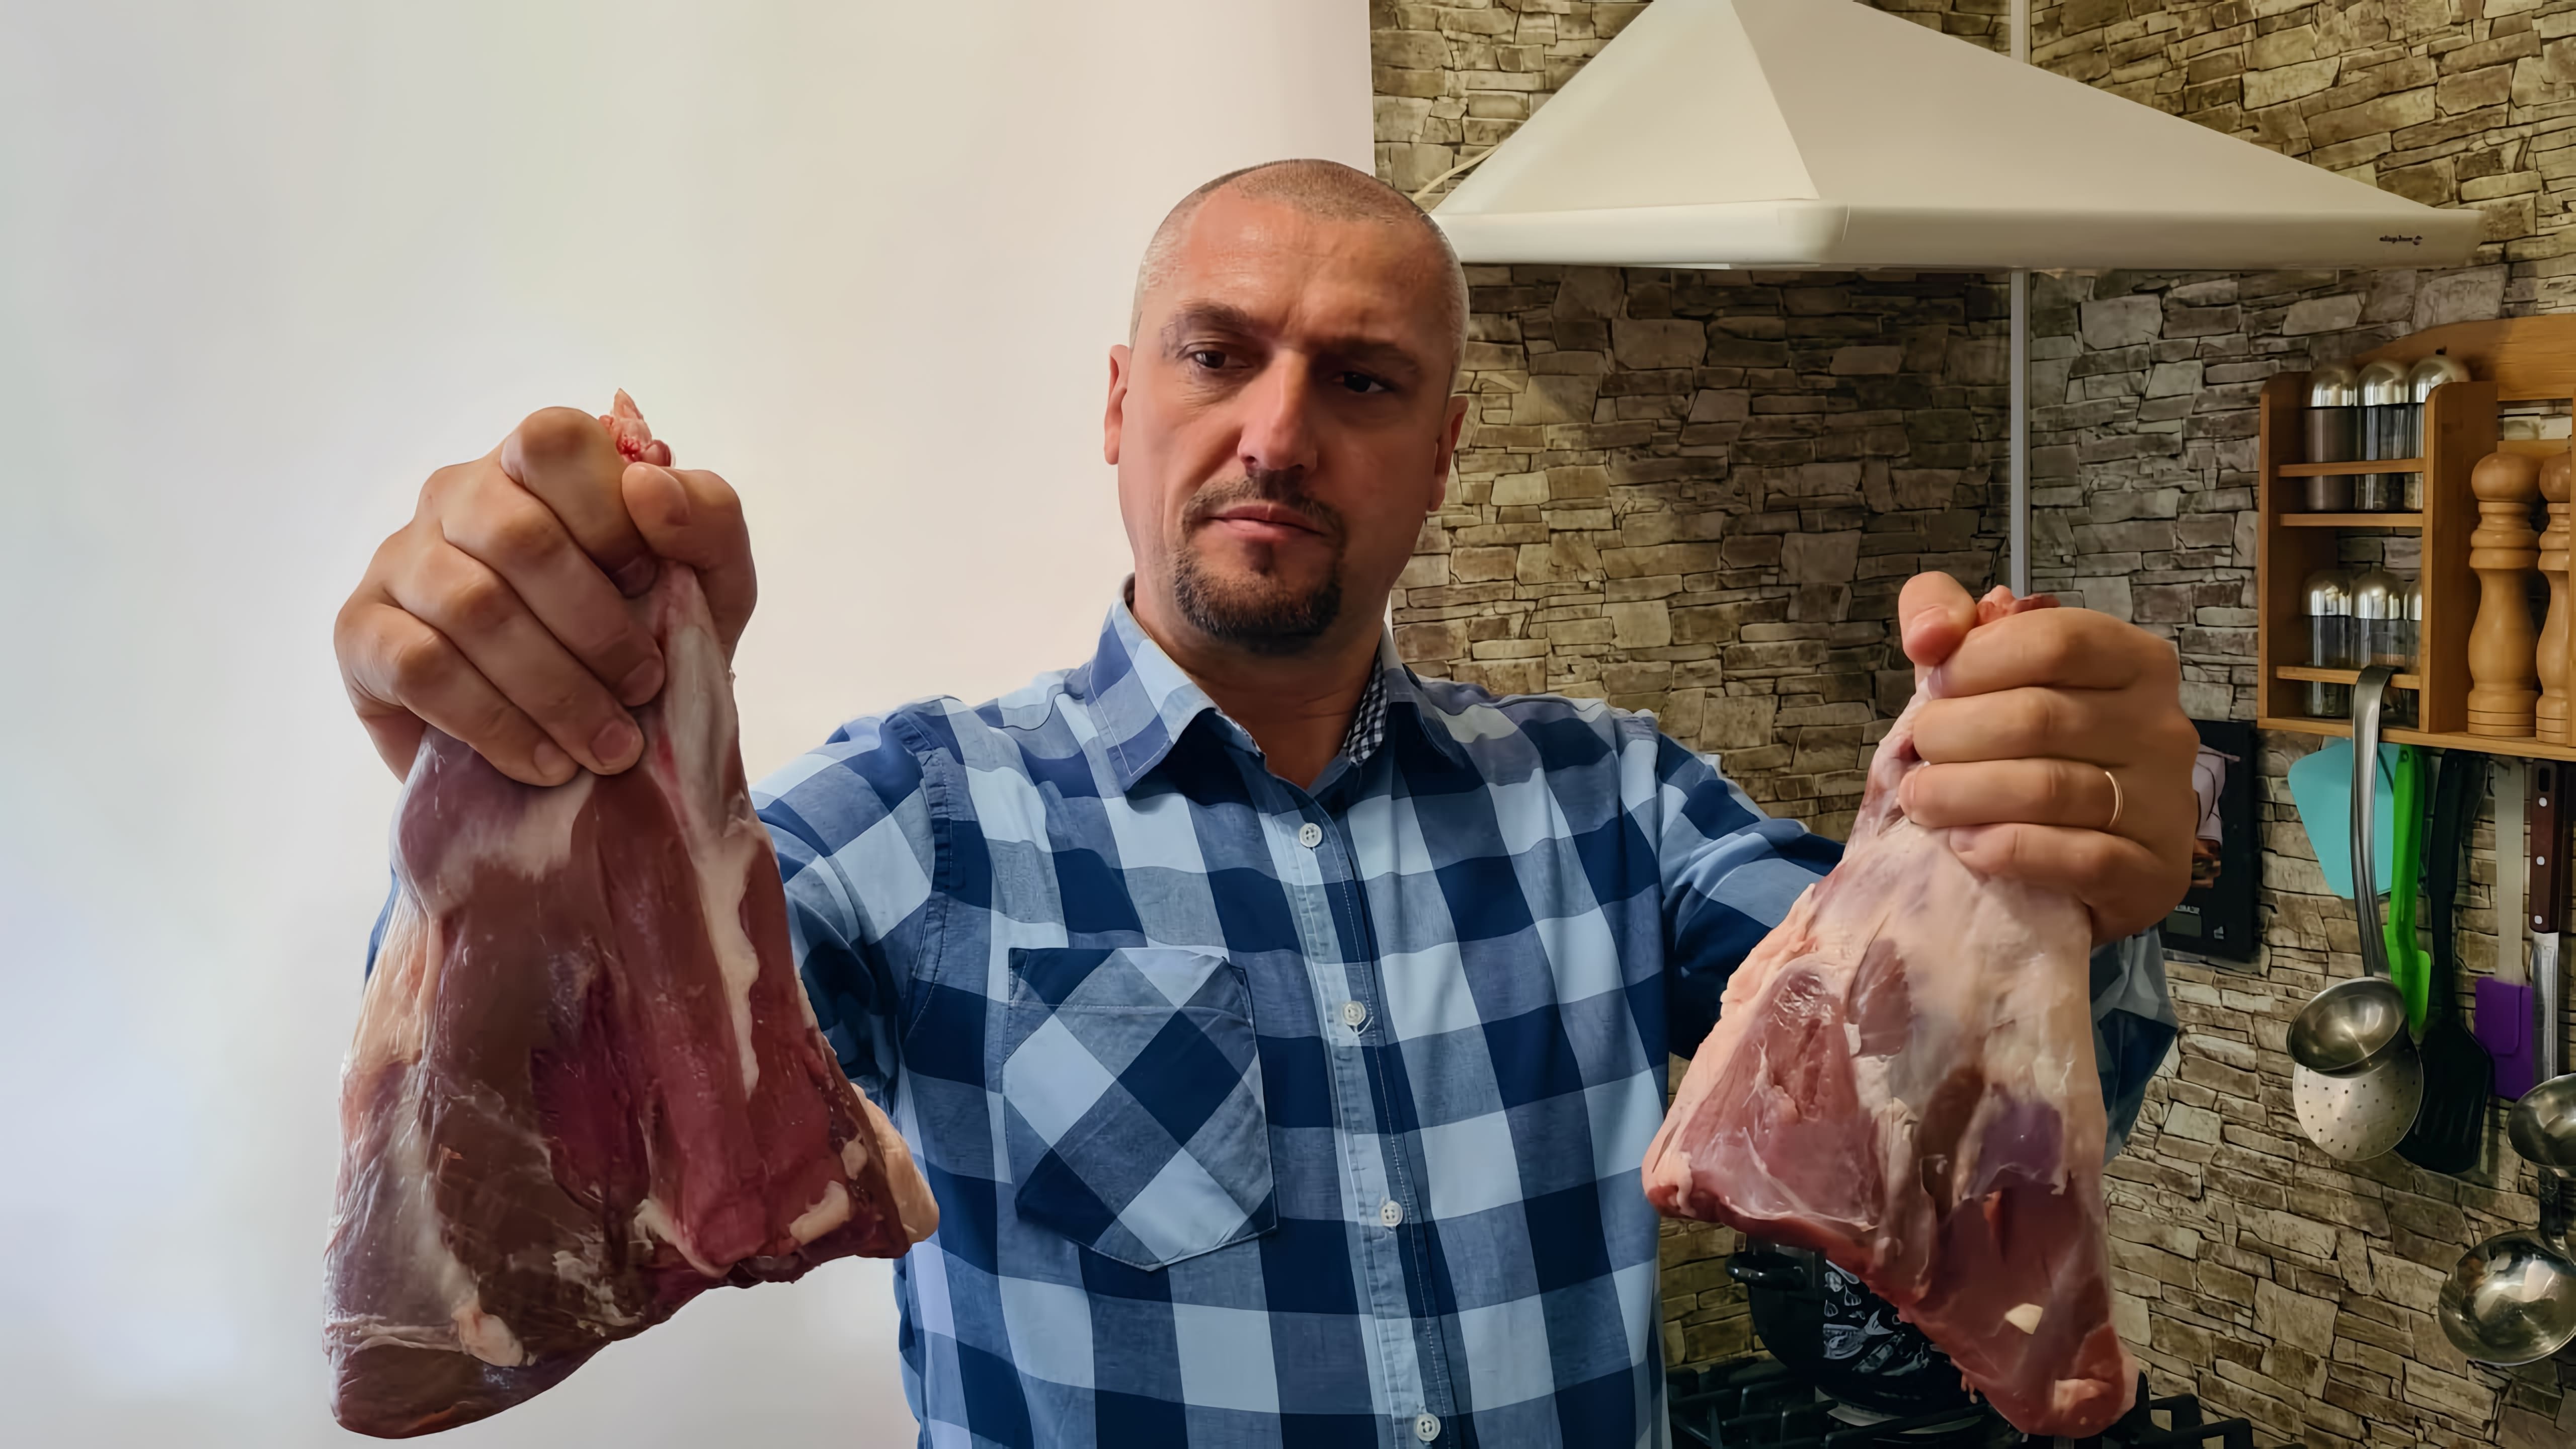 В этом видео демонстрируется рецепт приготовления баранины по-гречески, также известной как клефтико